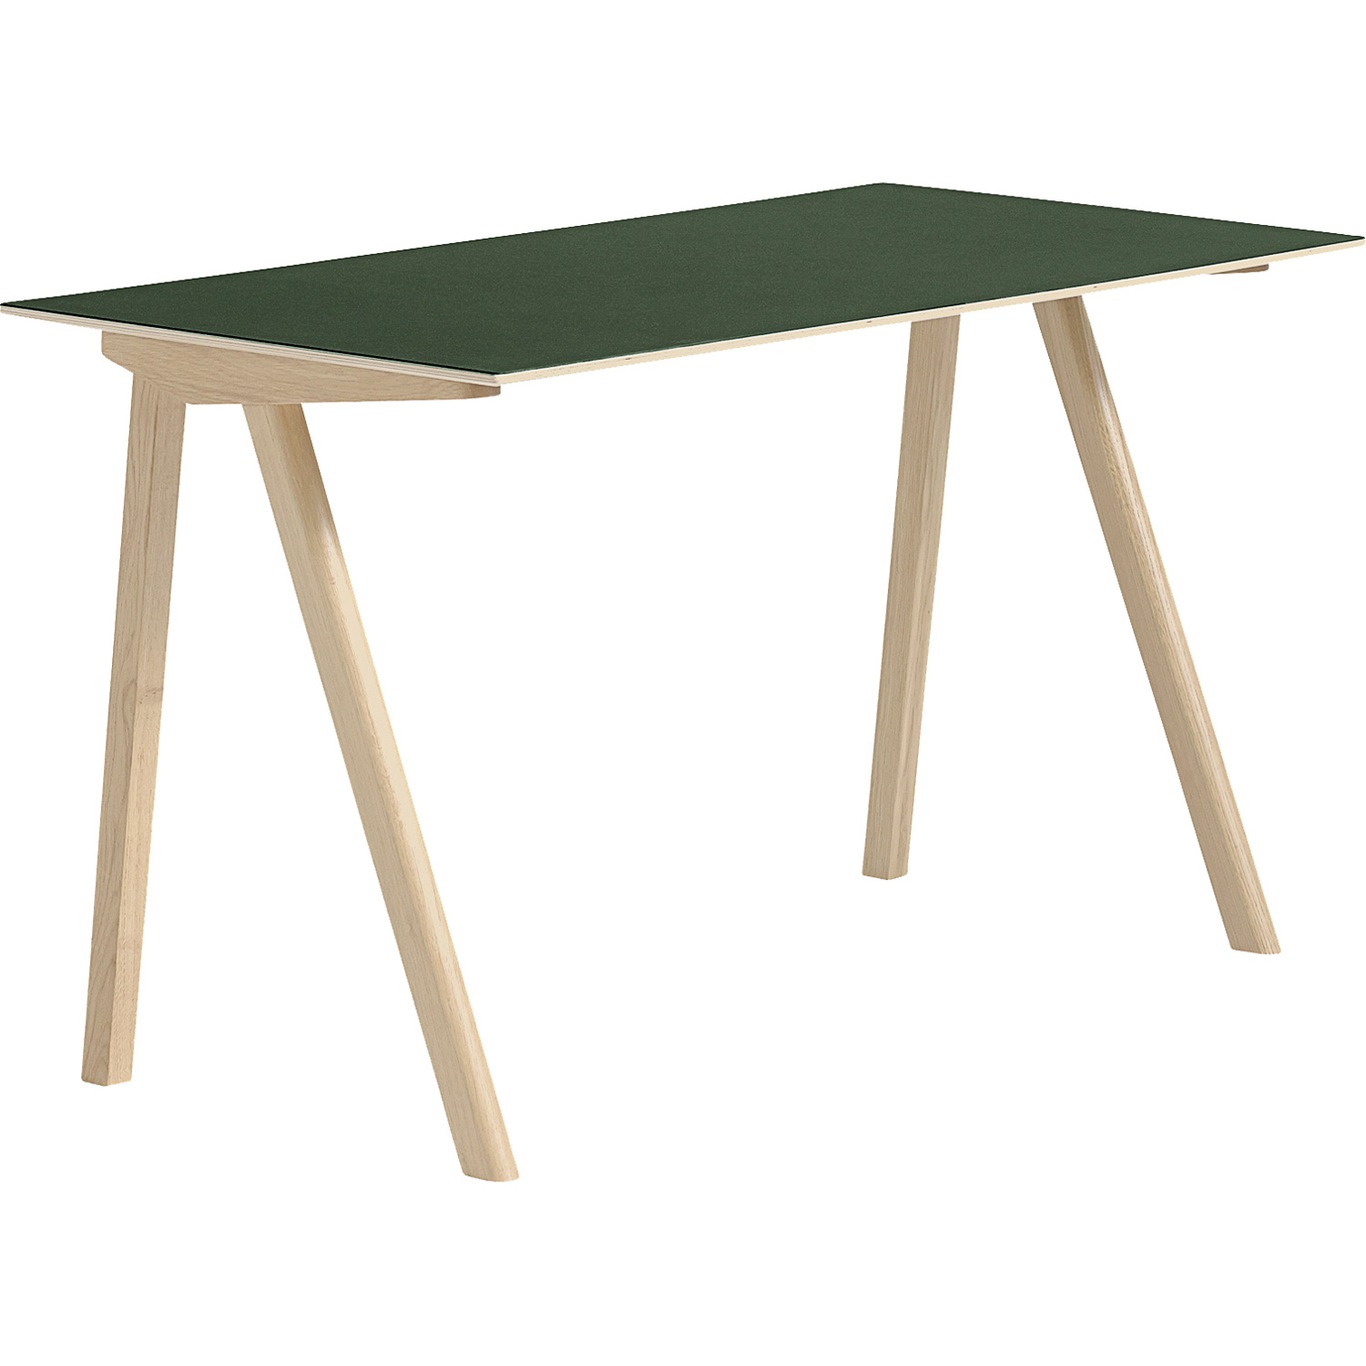 CPH 90 Schreibtisch, Mit Wasserlack Behandelte Eiche/Grün Linoleum